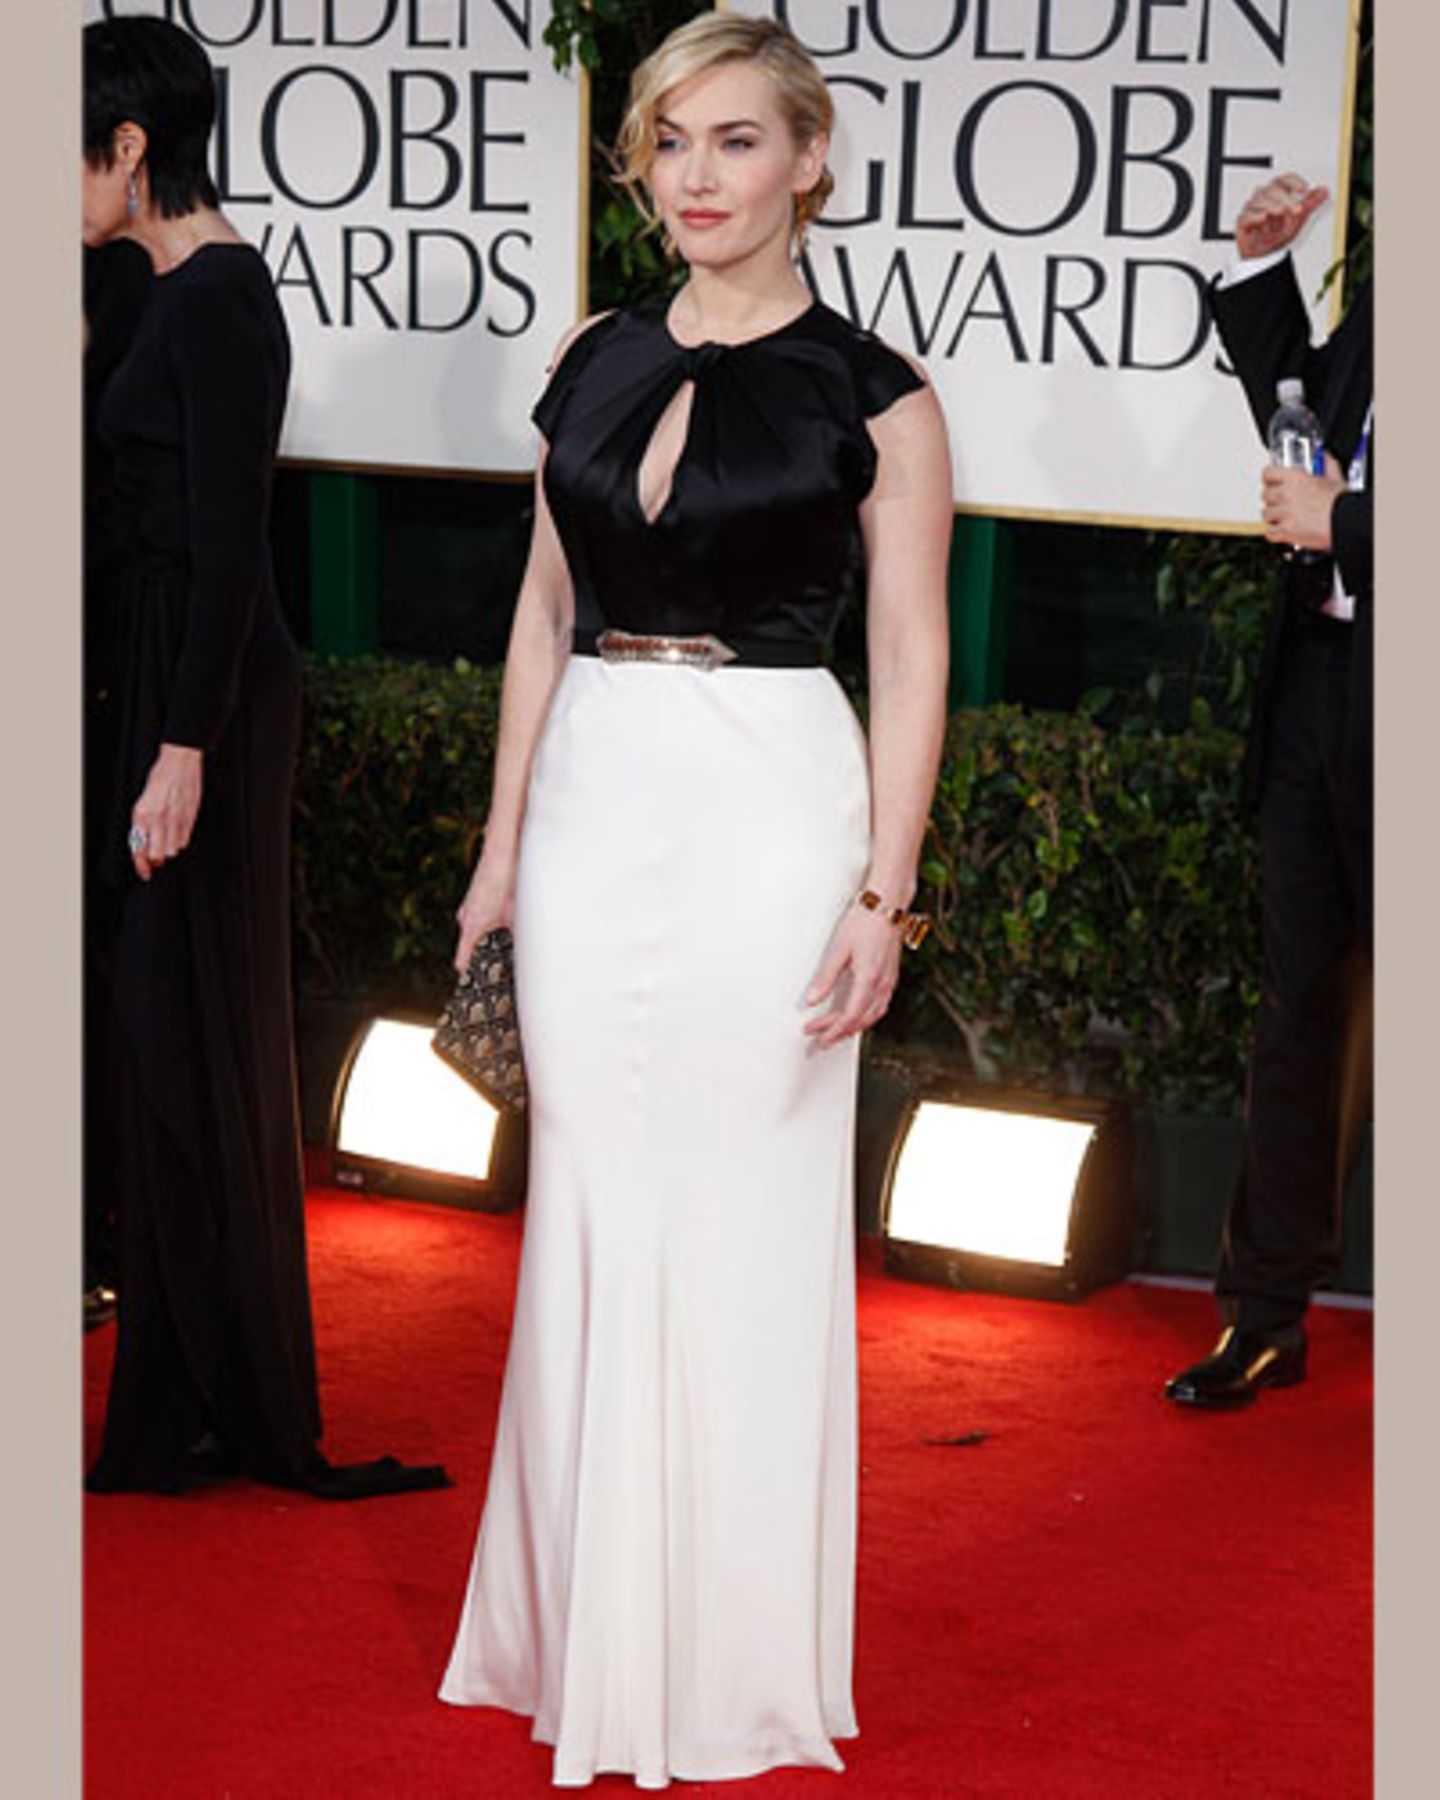 Golden Globes 2012: Kate Winslet